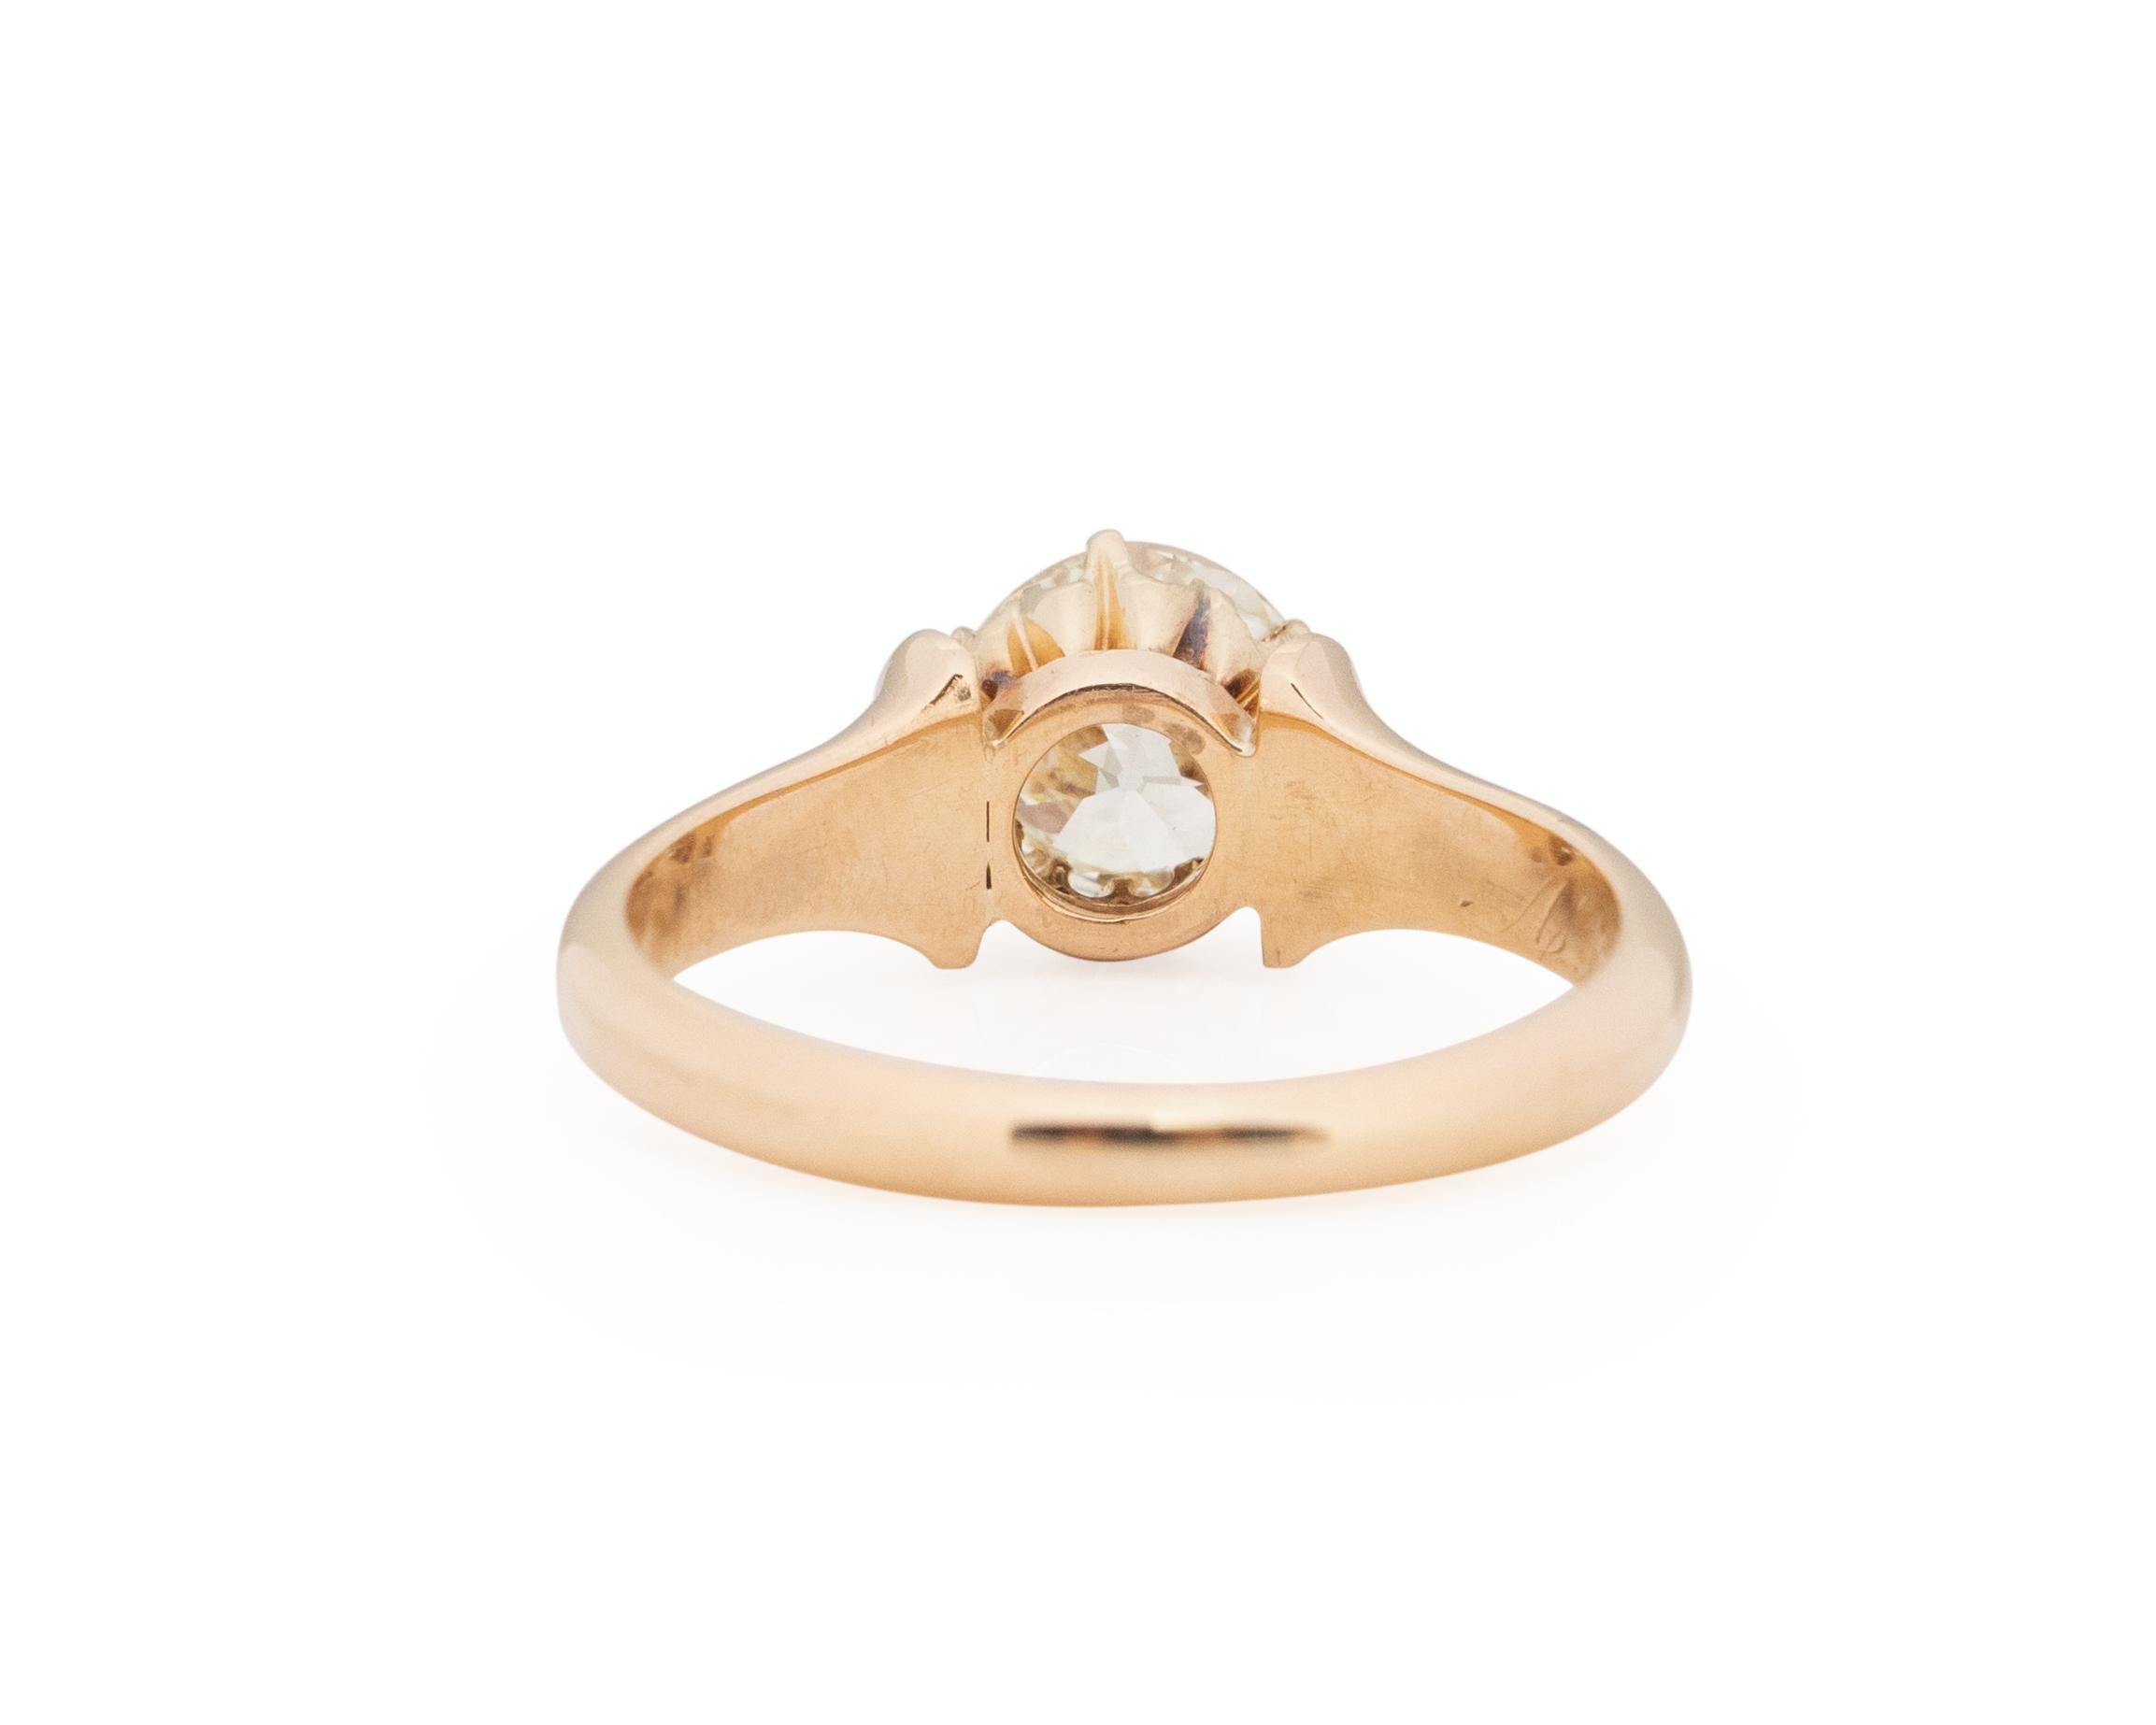 GIA Certified 1.32 Carat Edwardian Diamond 14 Karat Yellow Gold Engagement Ring In Good Condition For Sale In Atlanta, GA